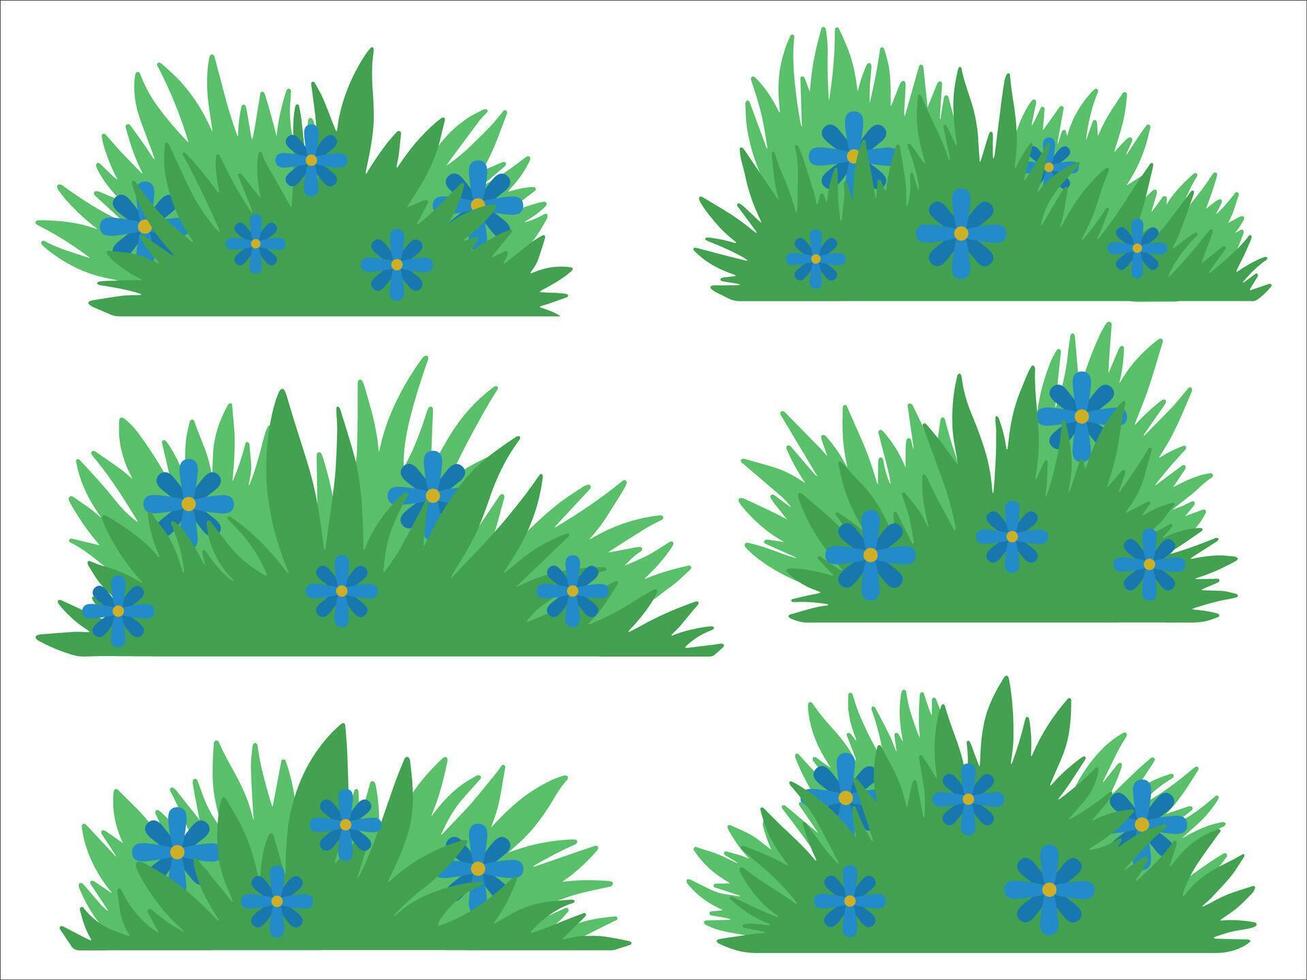 groen struiken gras landschap illustratie vector